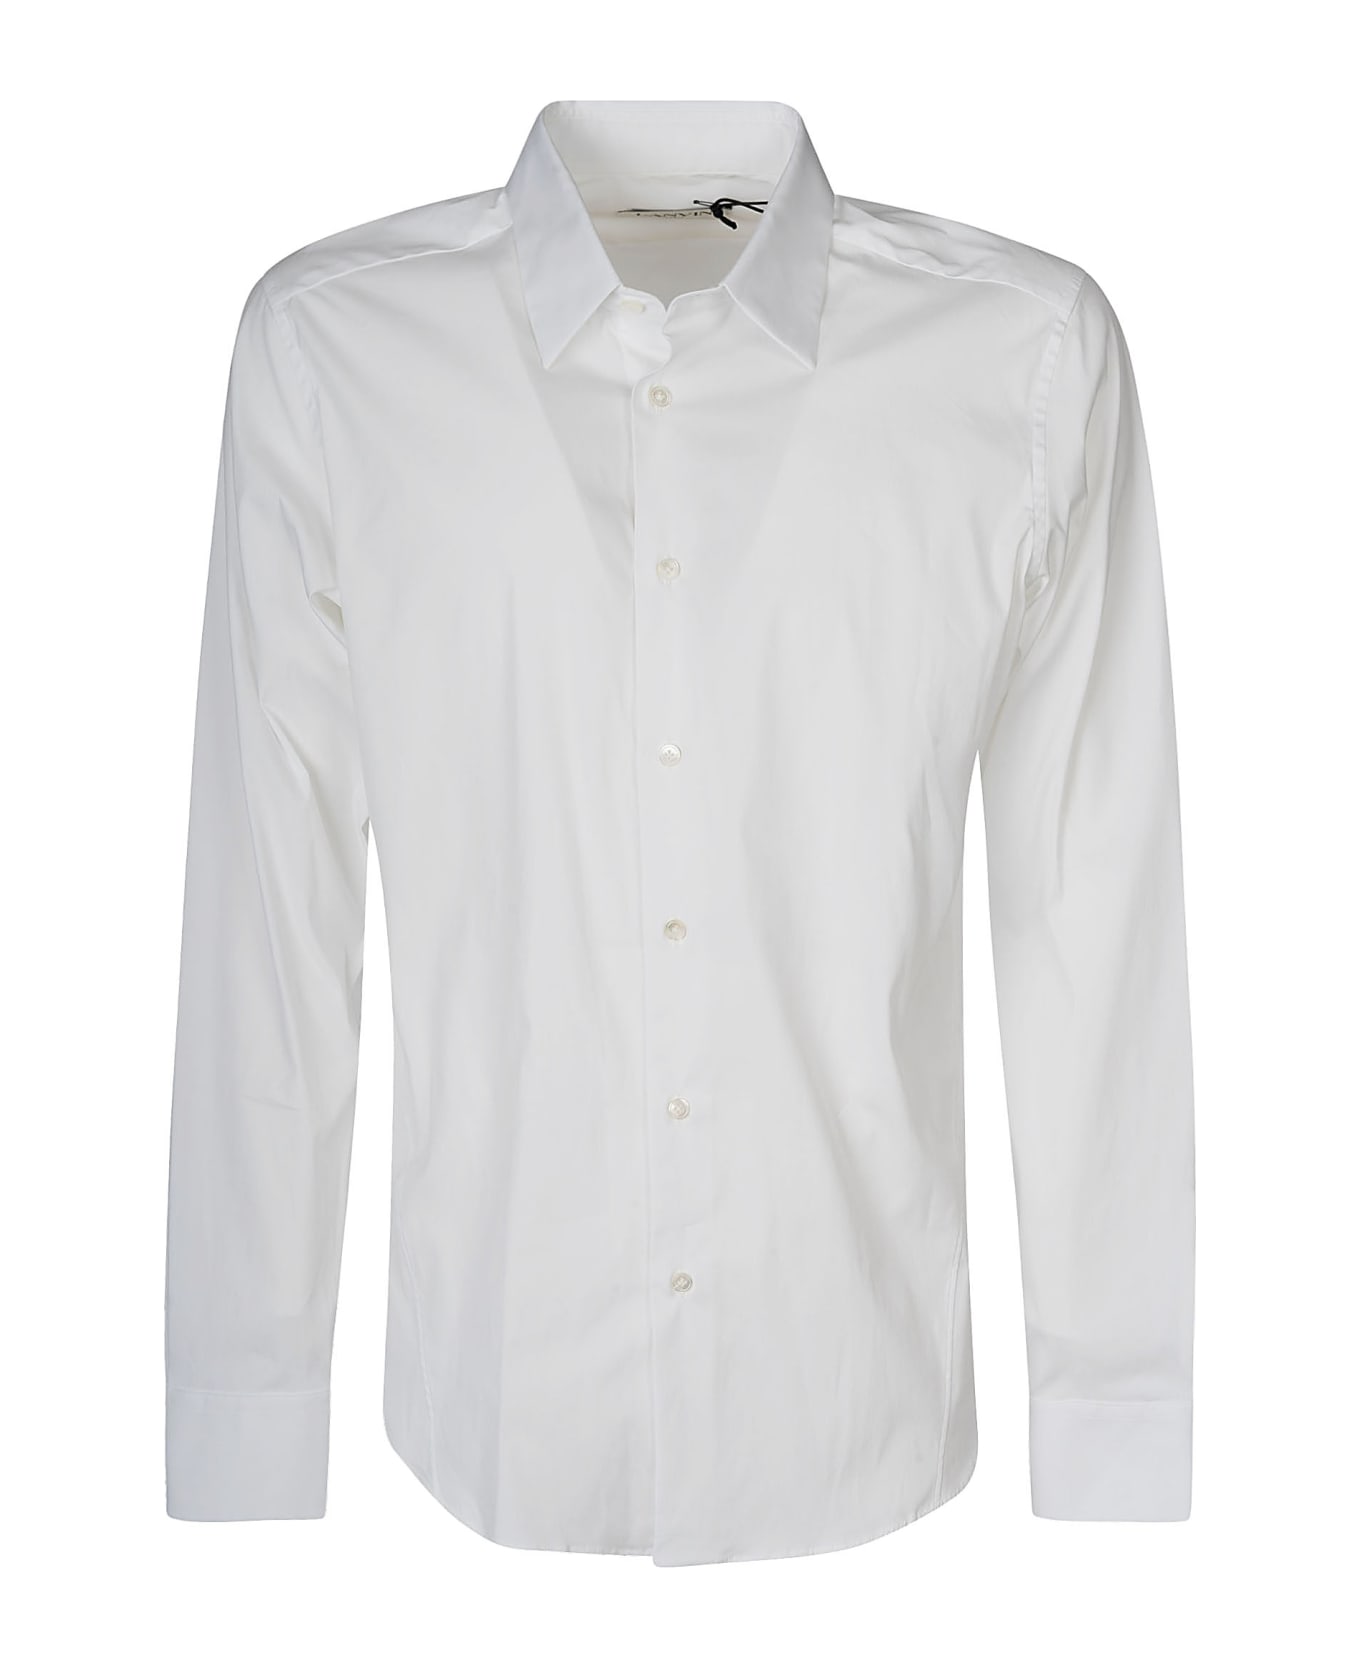 Lanvin Round Hem Plain T-shirt - Bianco